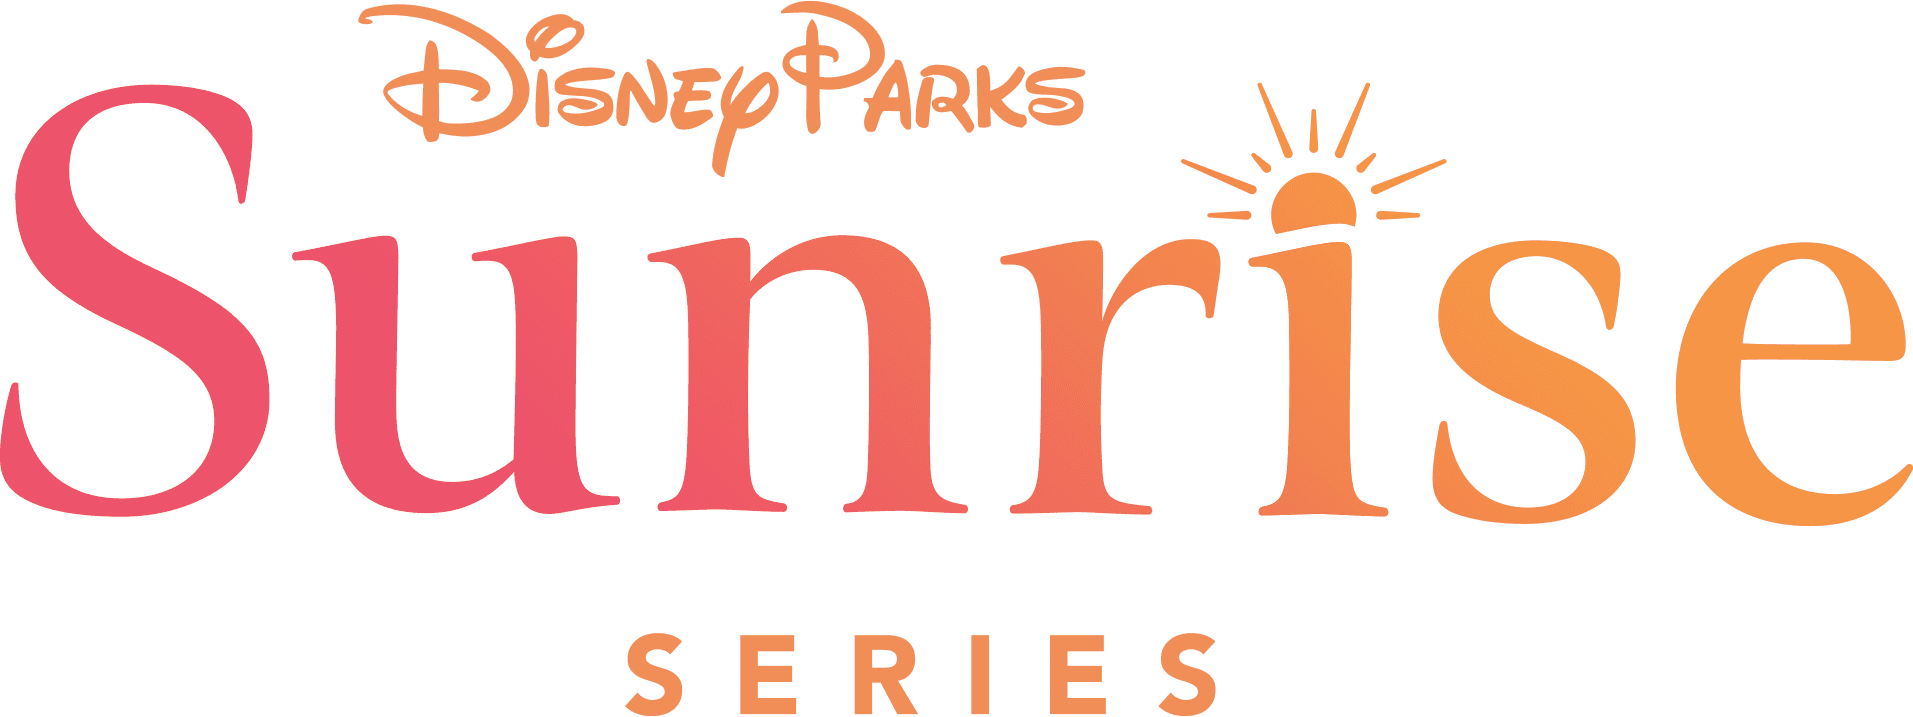 Disney Parks Sunrise Series logo